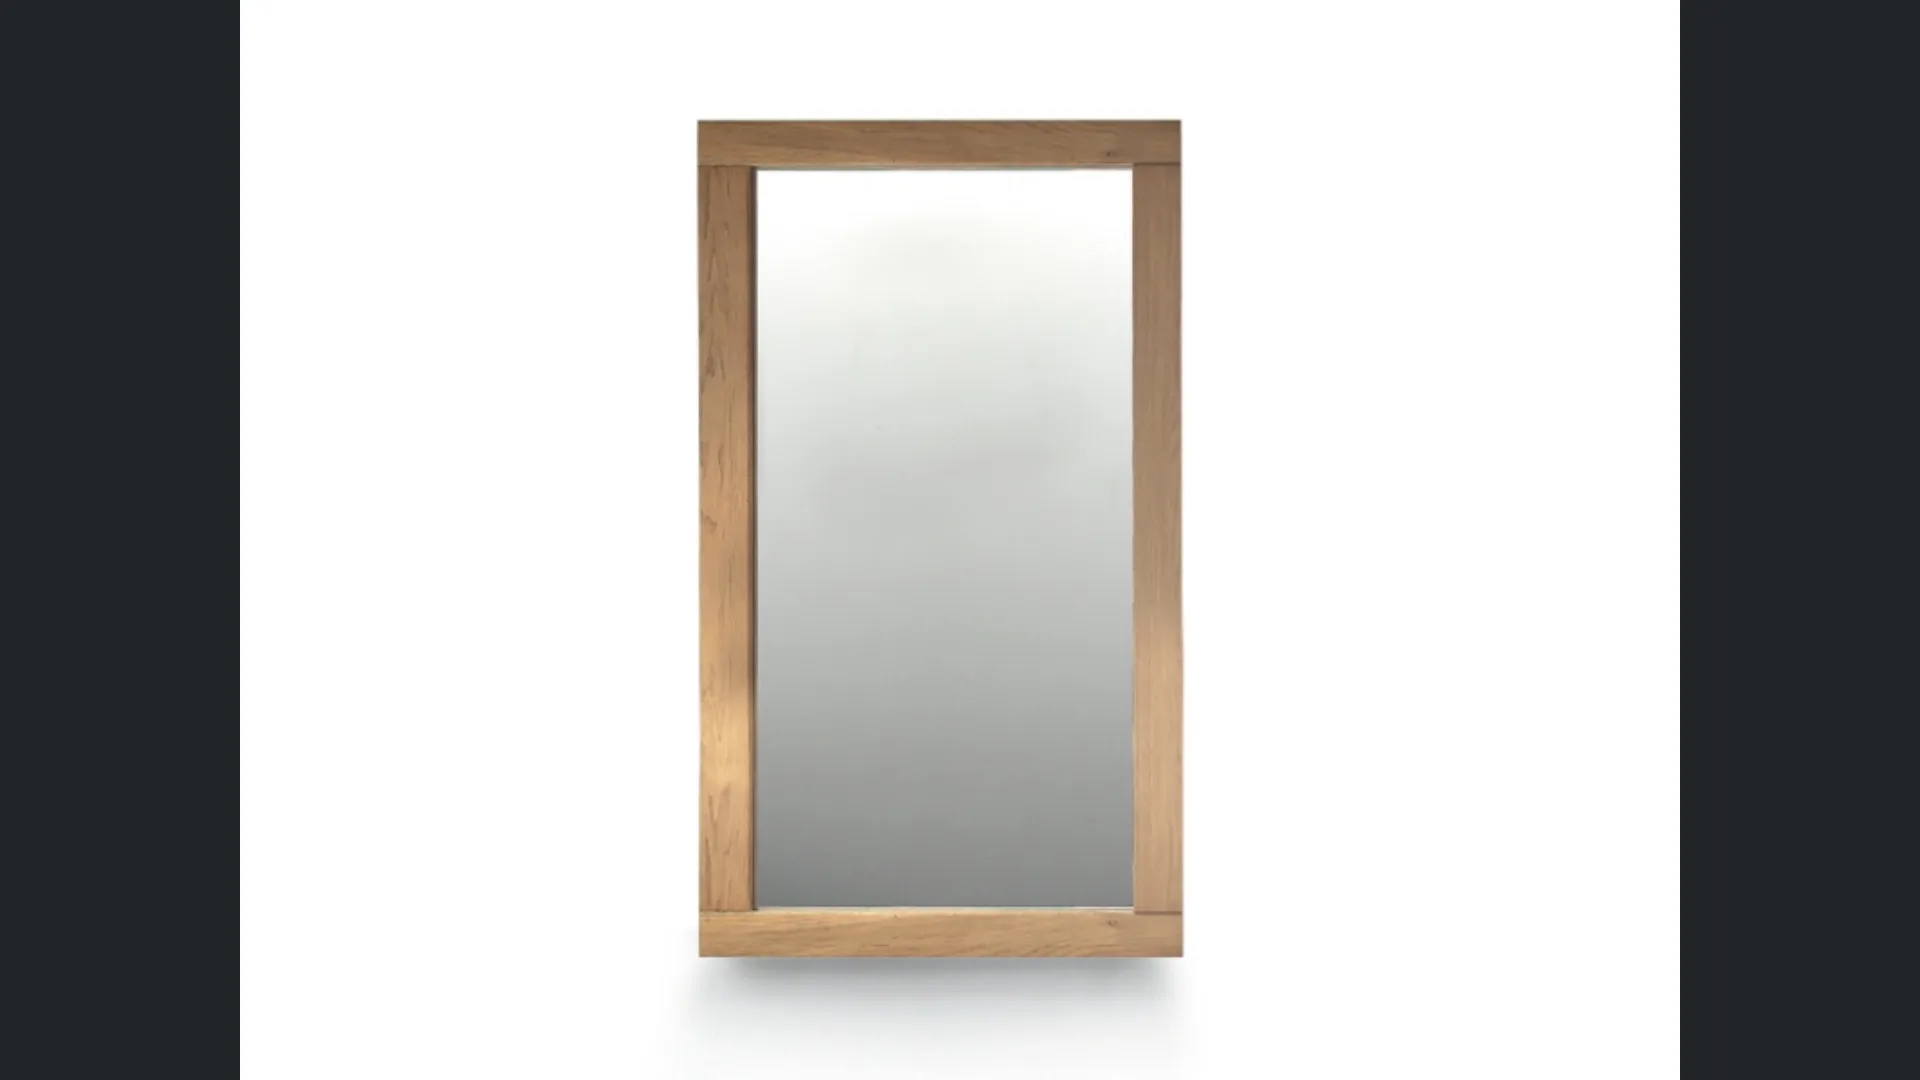 Specchio Quadra con cornice in massello di rovere di Devina Nais